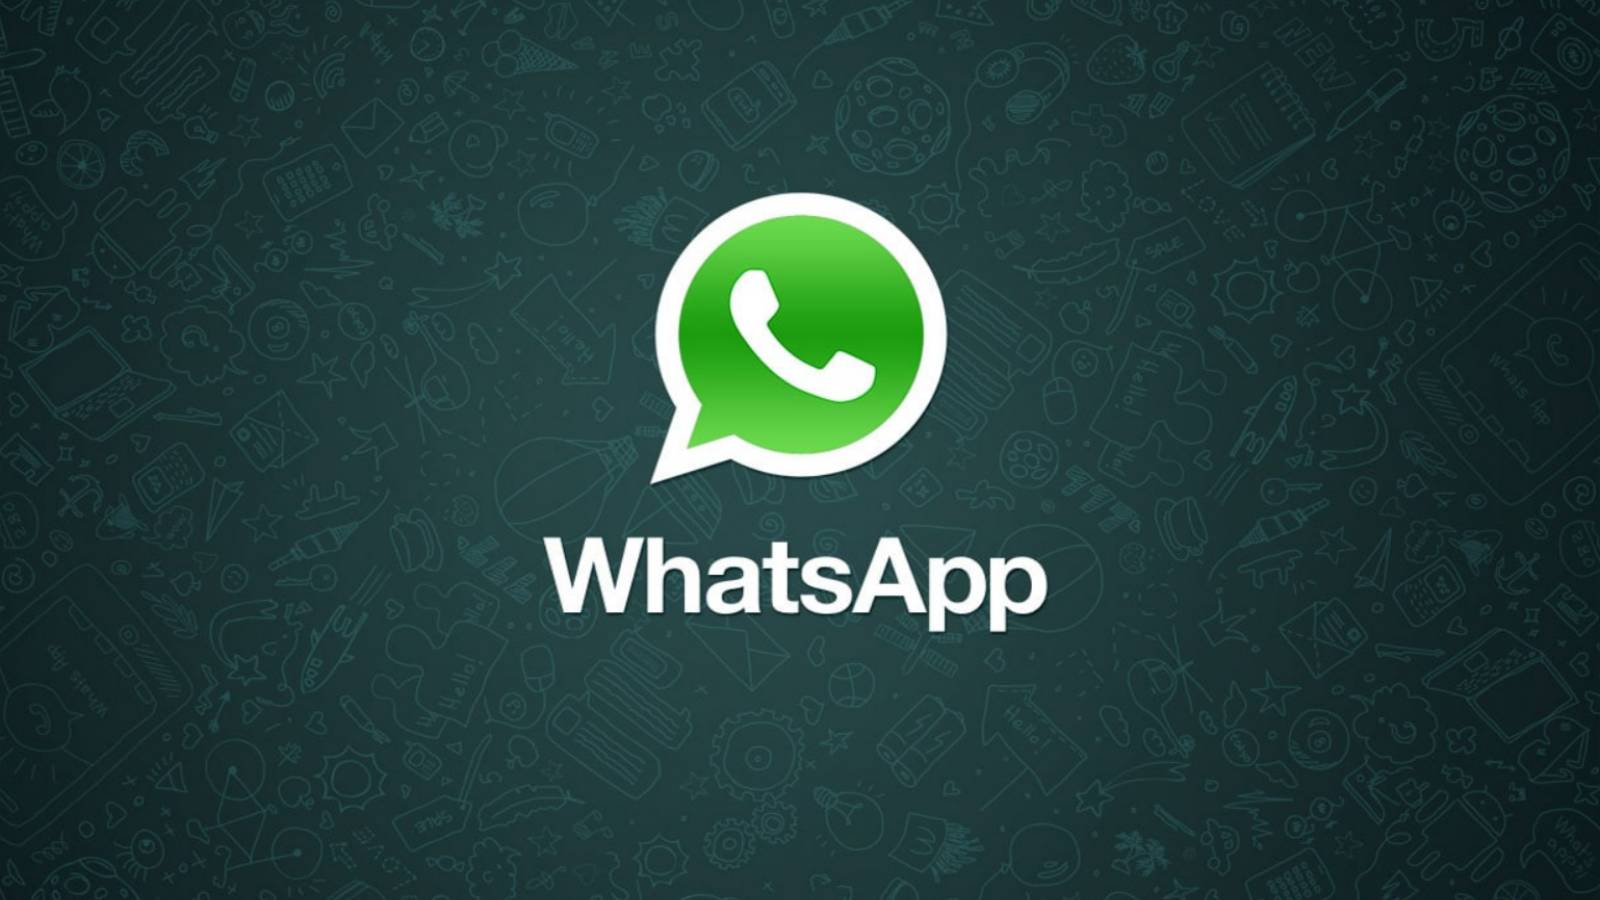 Cuori di WhatsApp